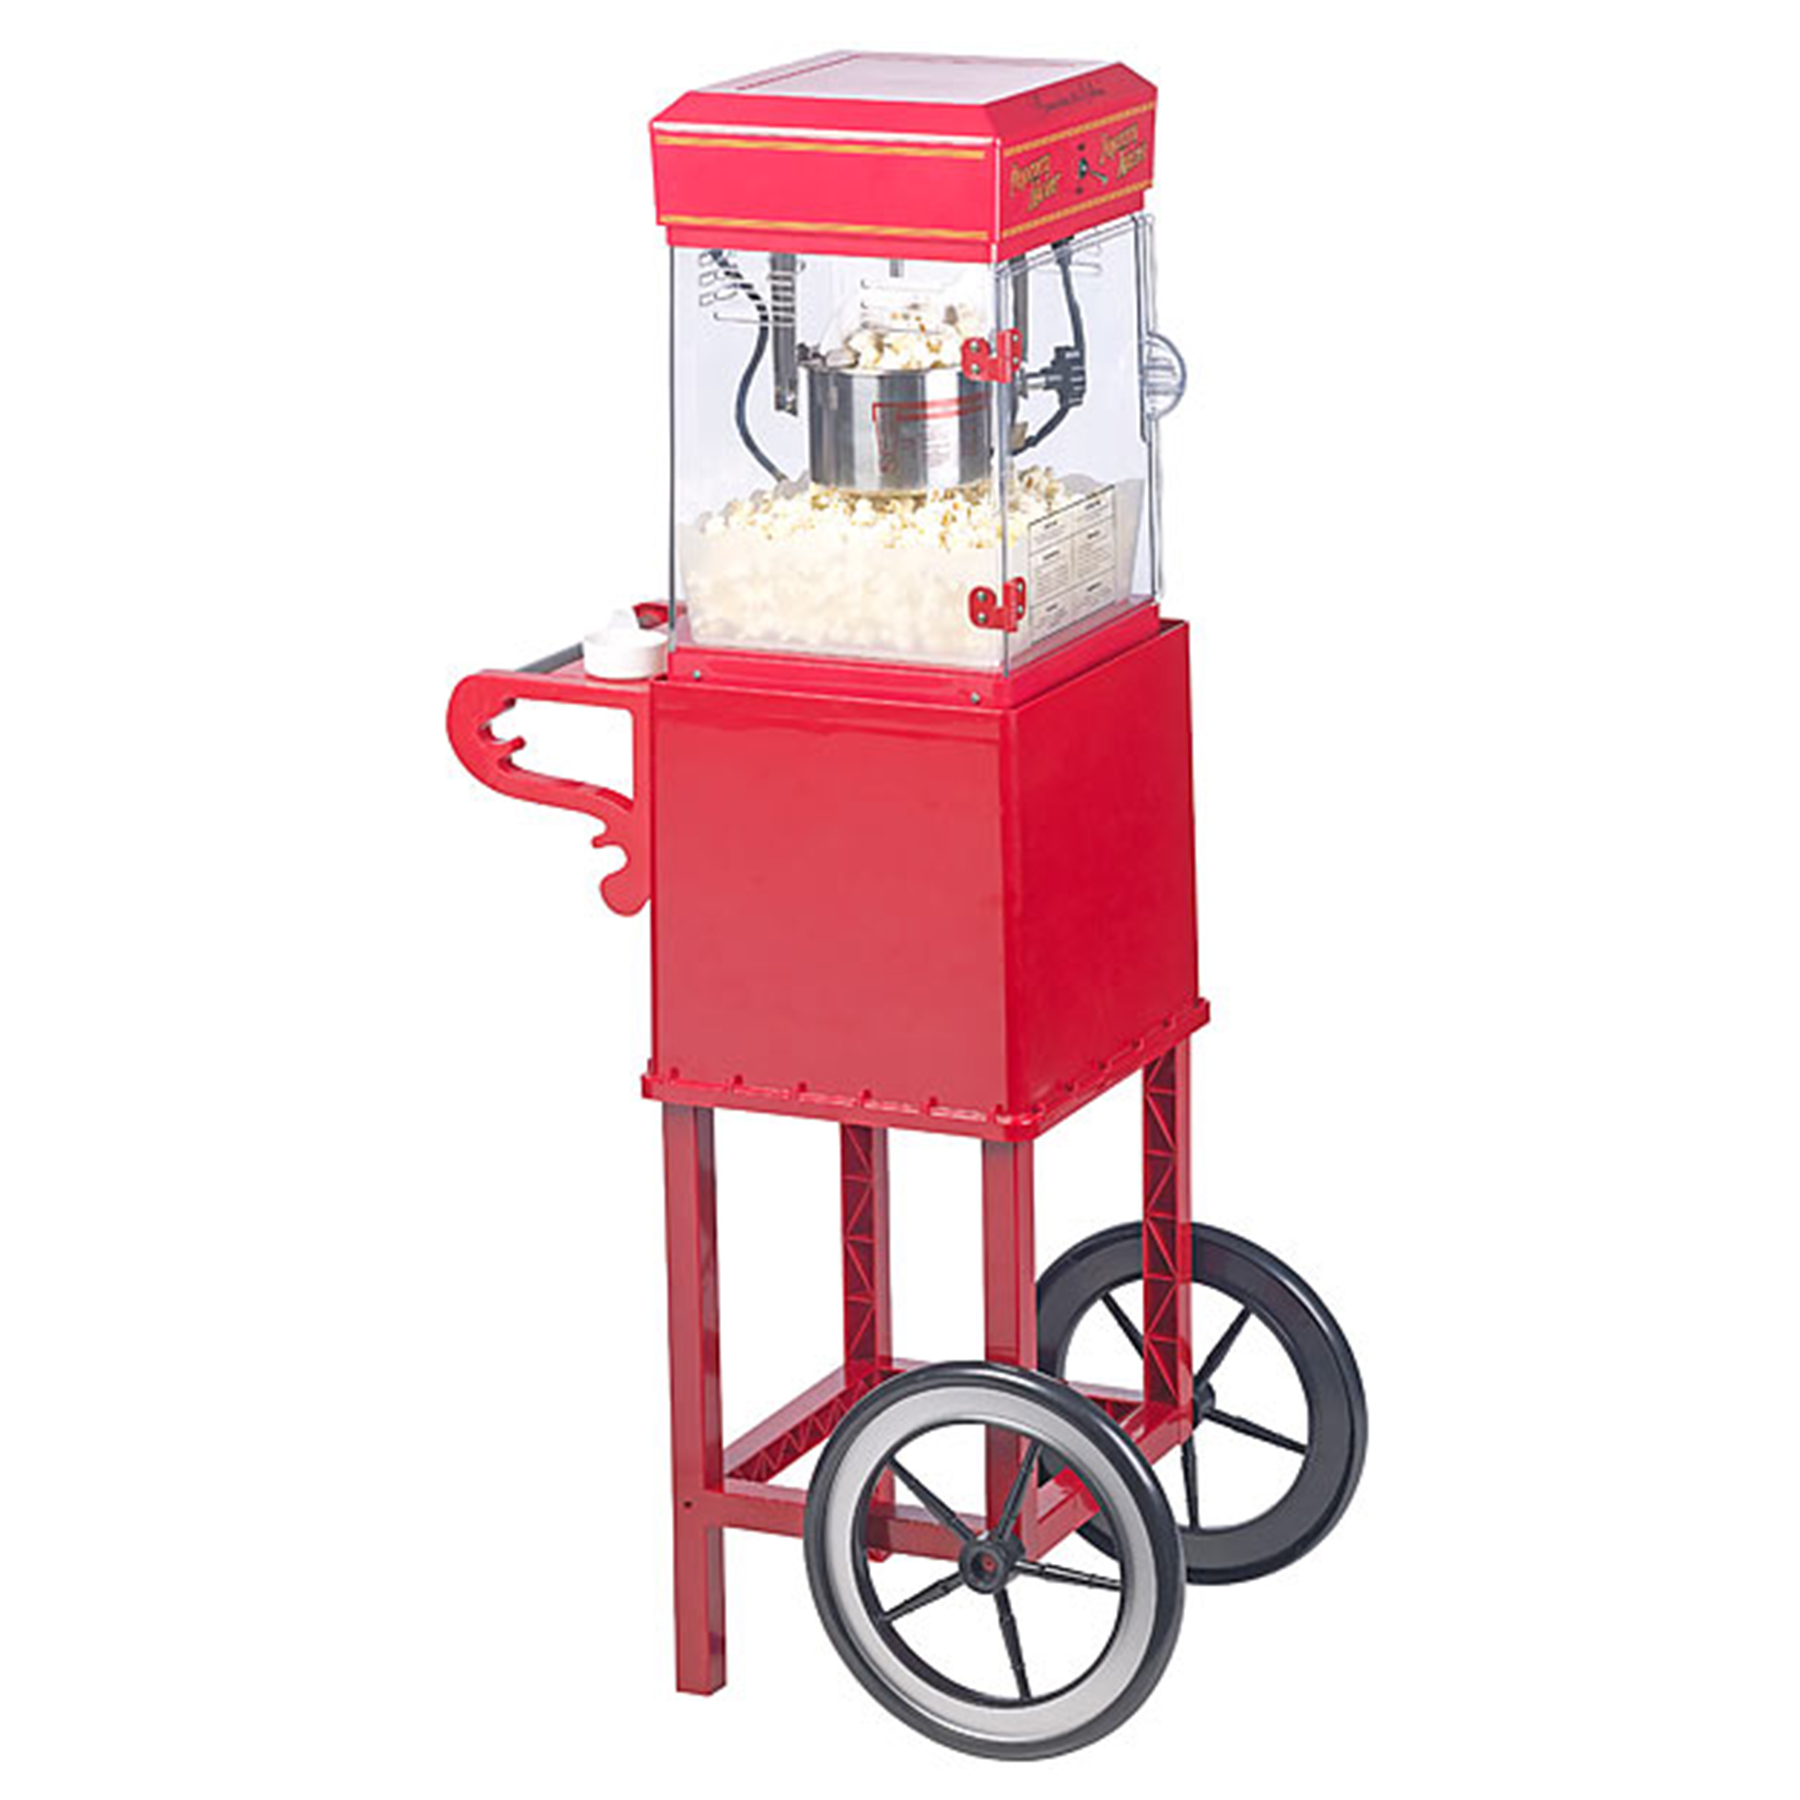 Popcornmaschine mit Wagen - Premium Edition 2197 - 5